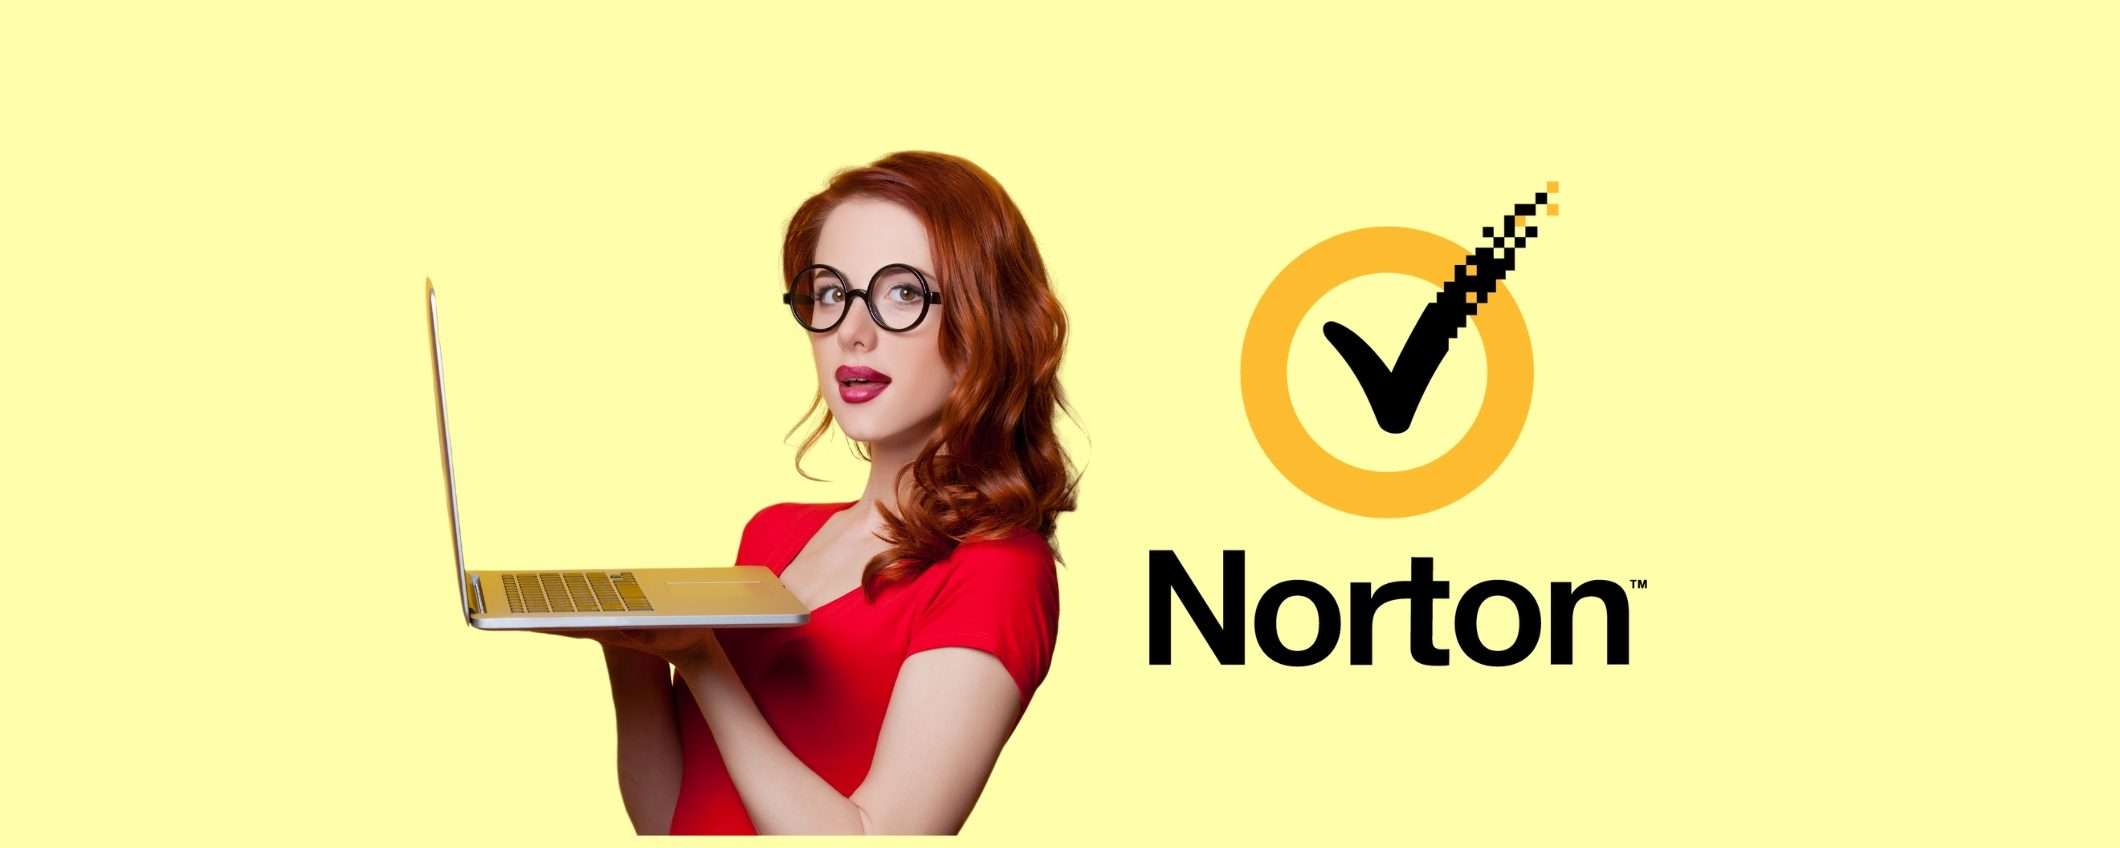 Norton: risparmia sulla tua sicurezza digitale fino al 66%